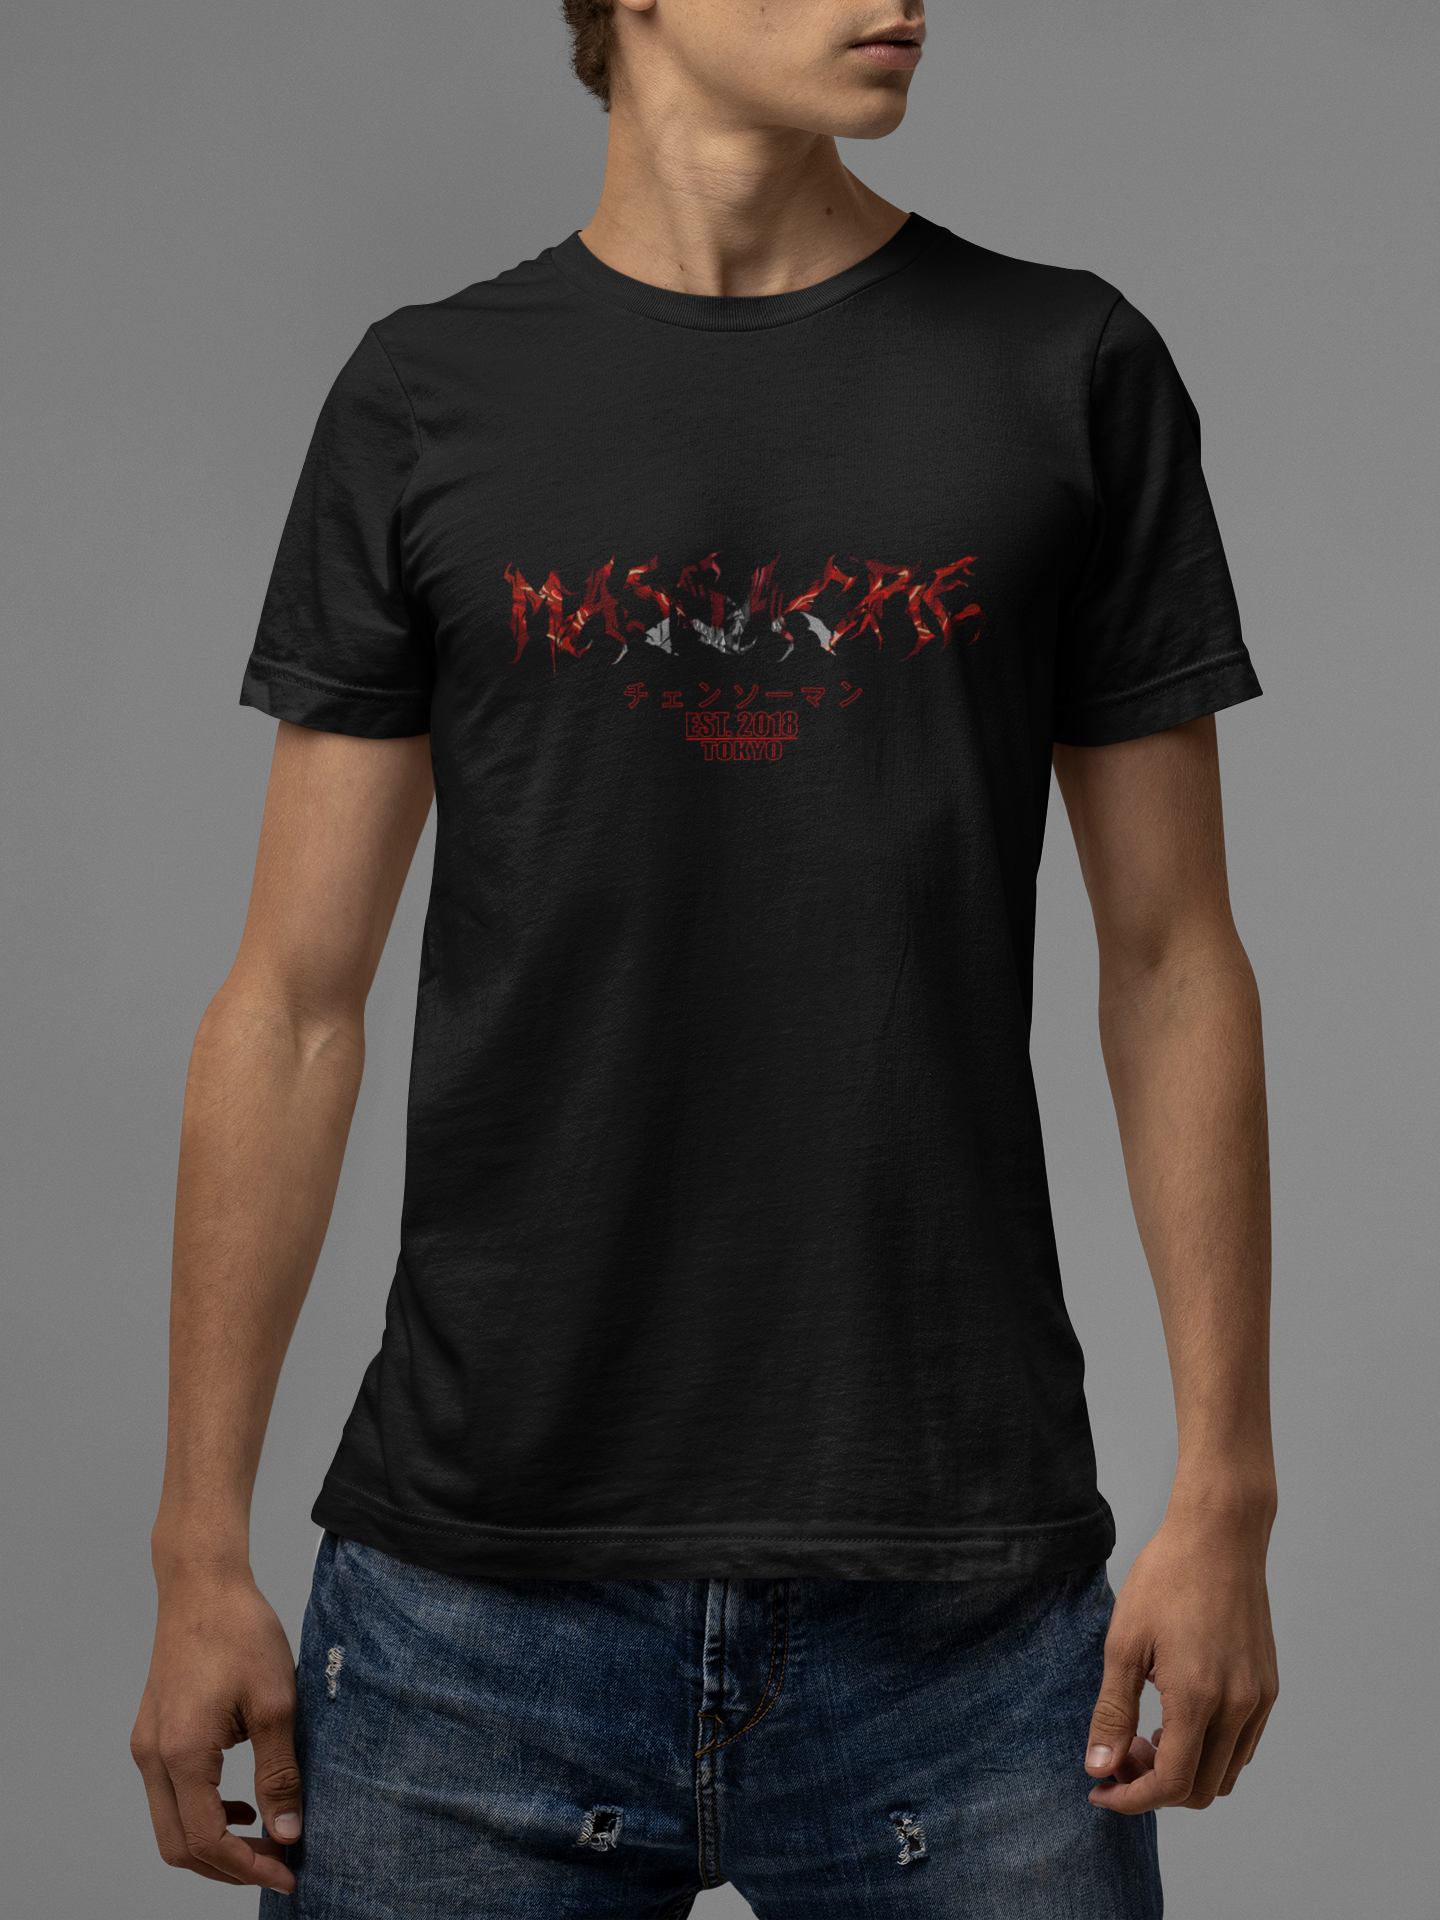 Chainsaw Man X Throne - Organic Shirt